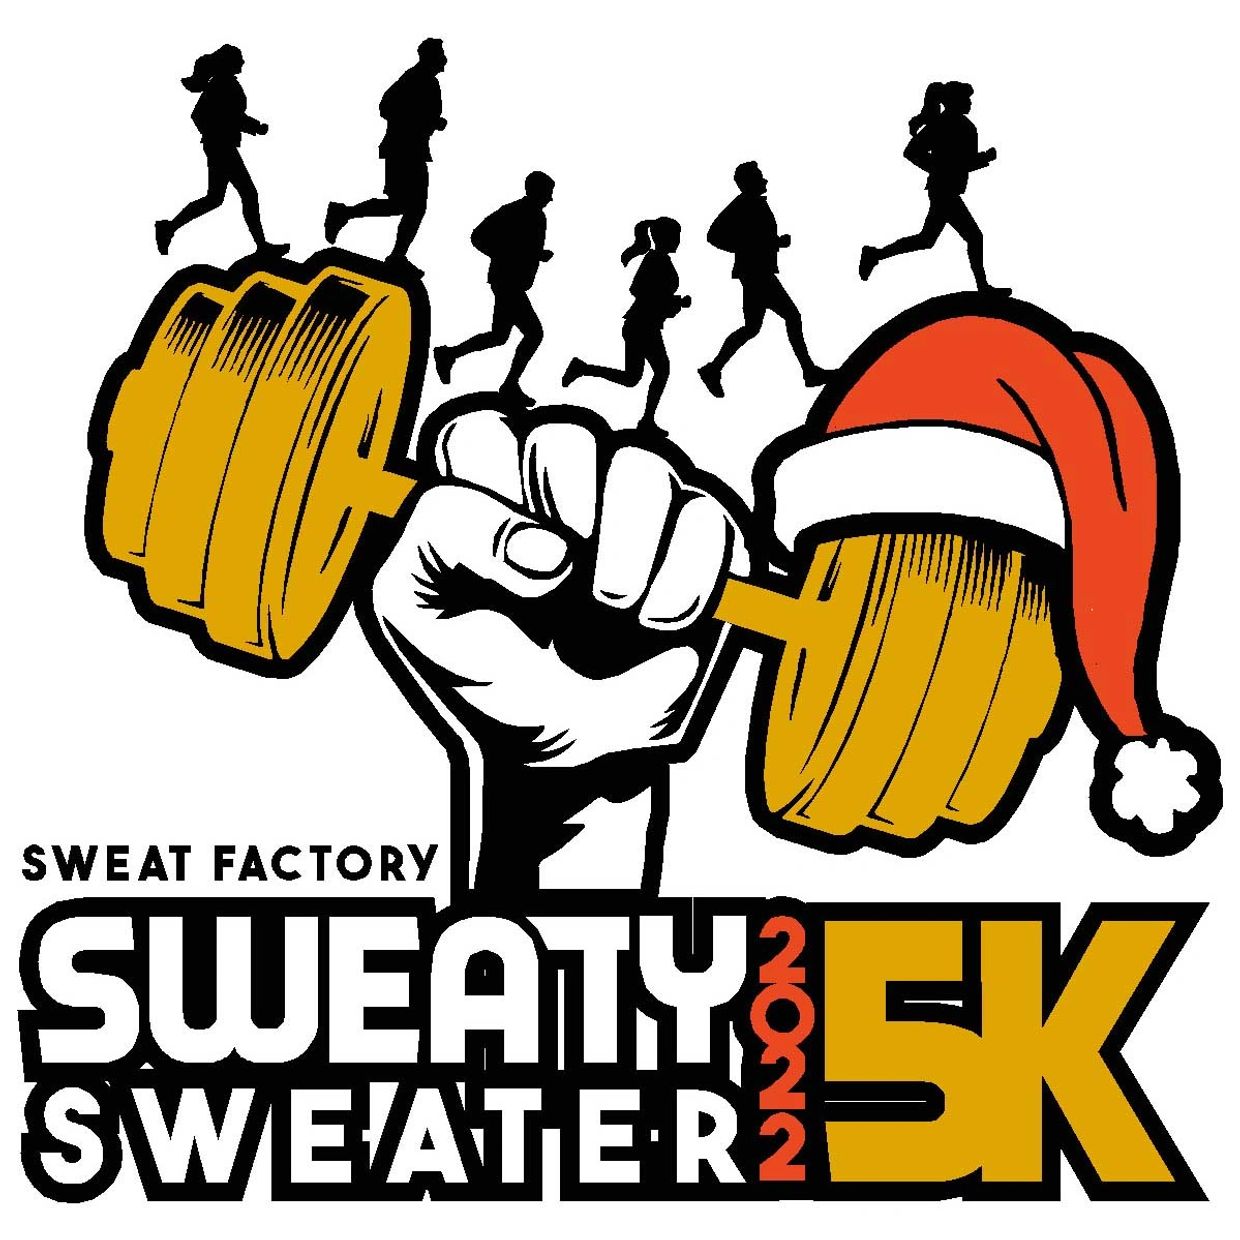 Sweaty Sweater 5k Run in Dwight, IL on December 3, 2022